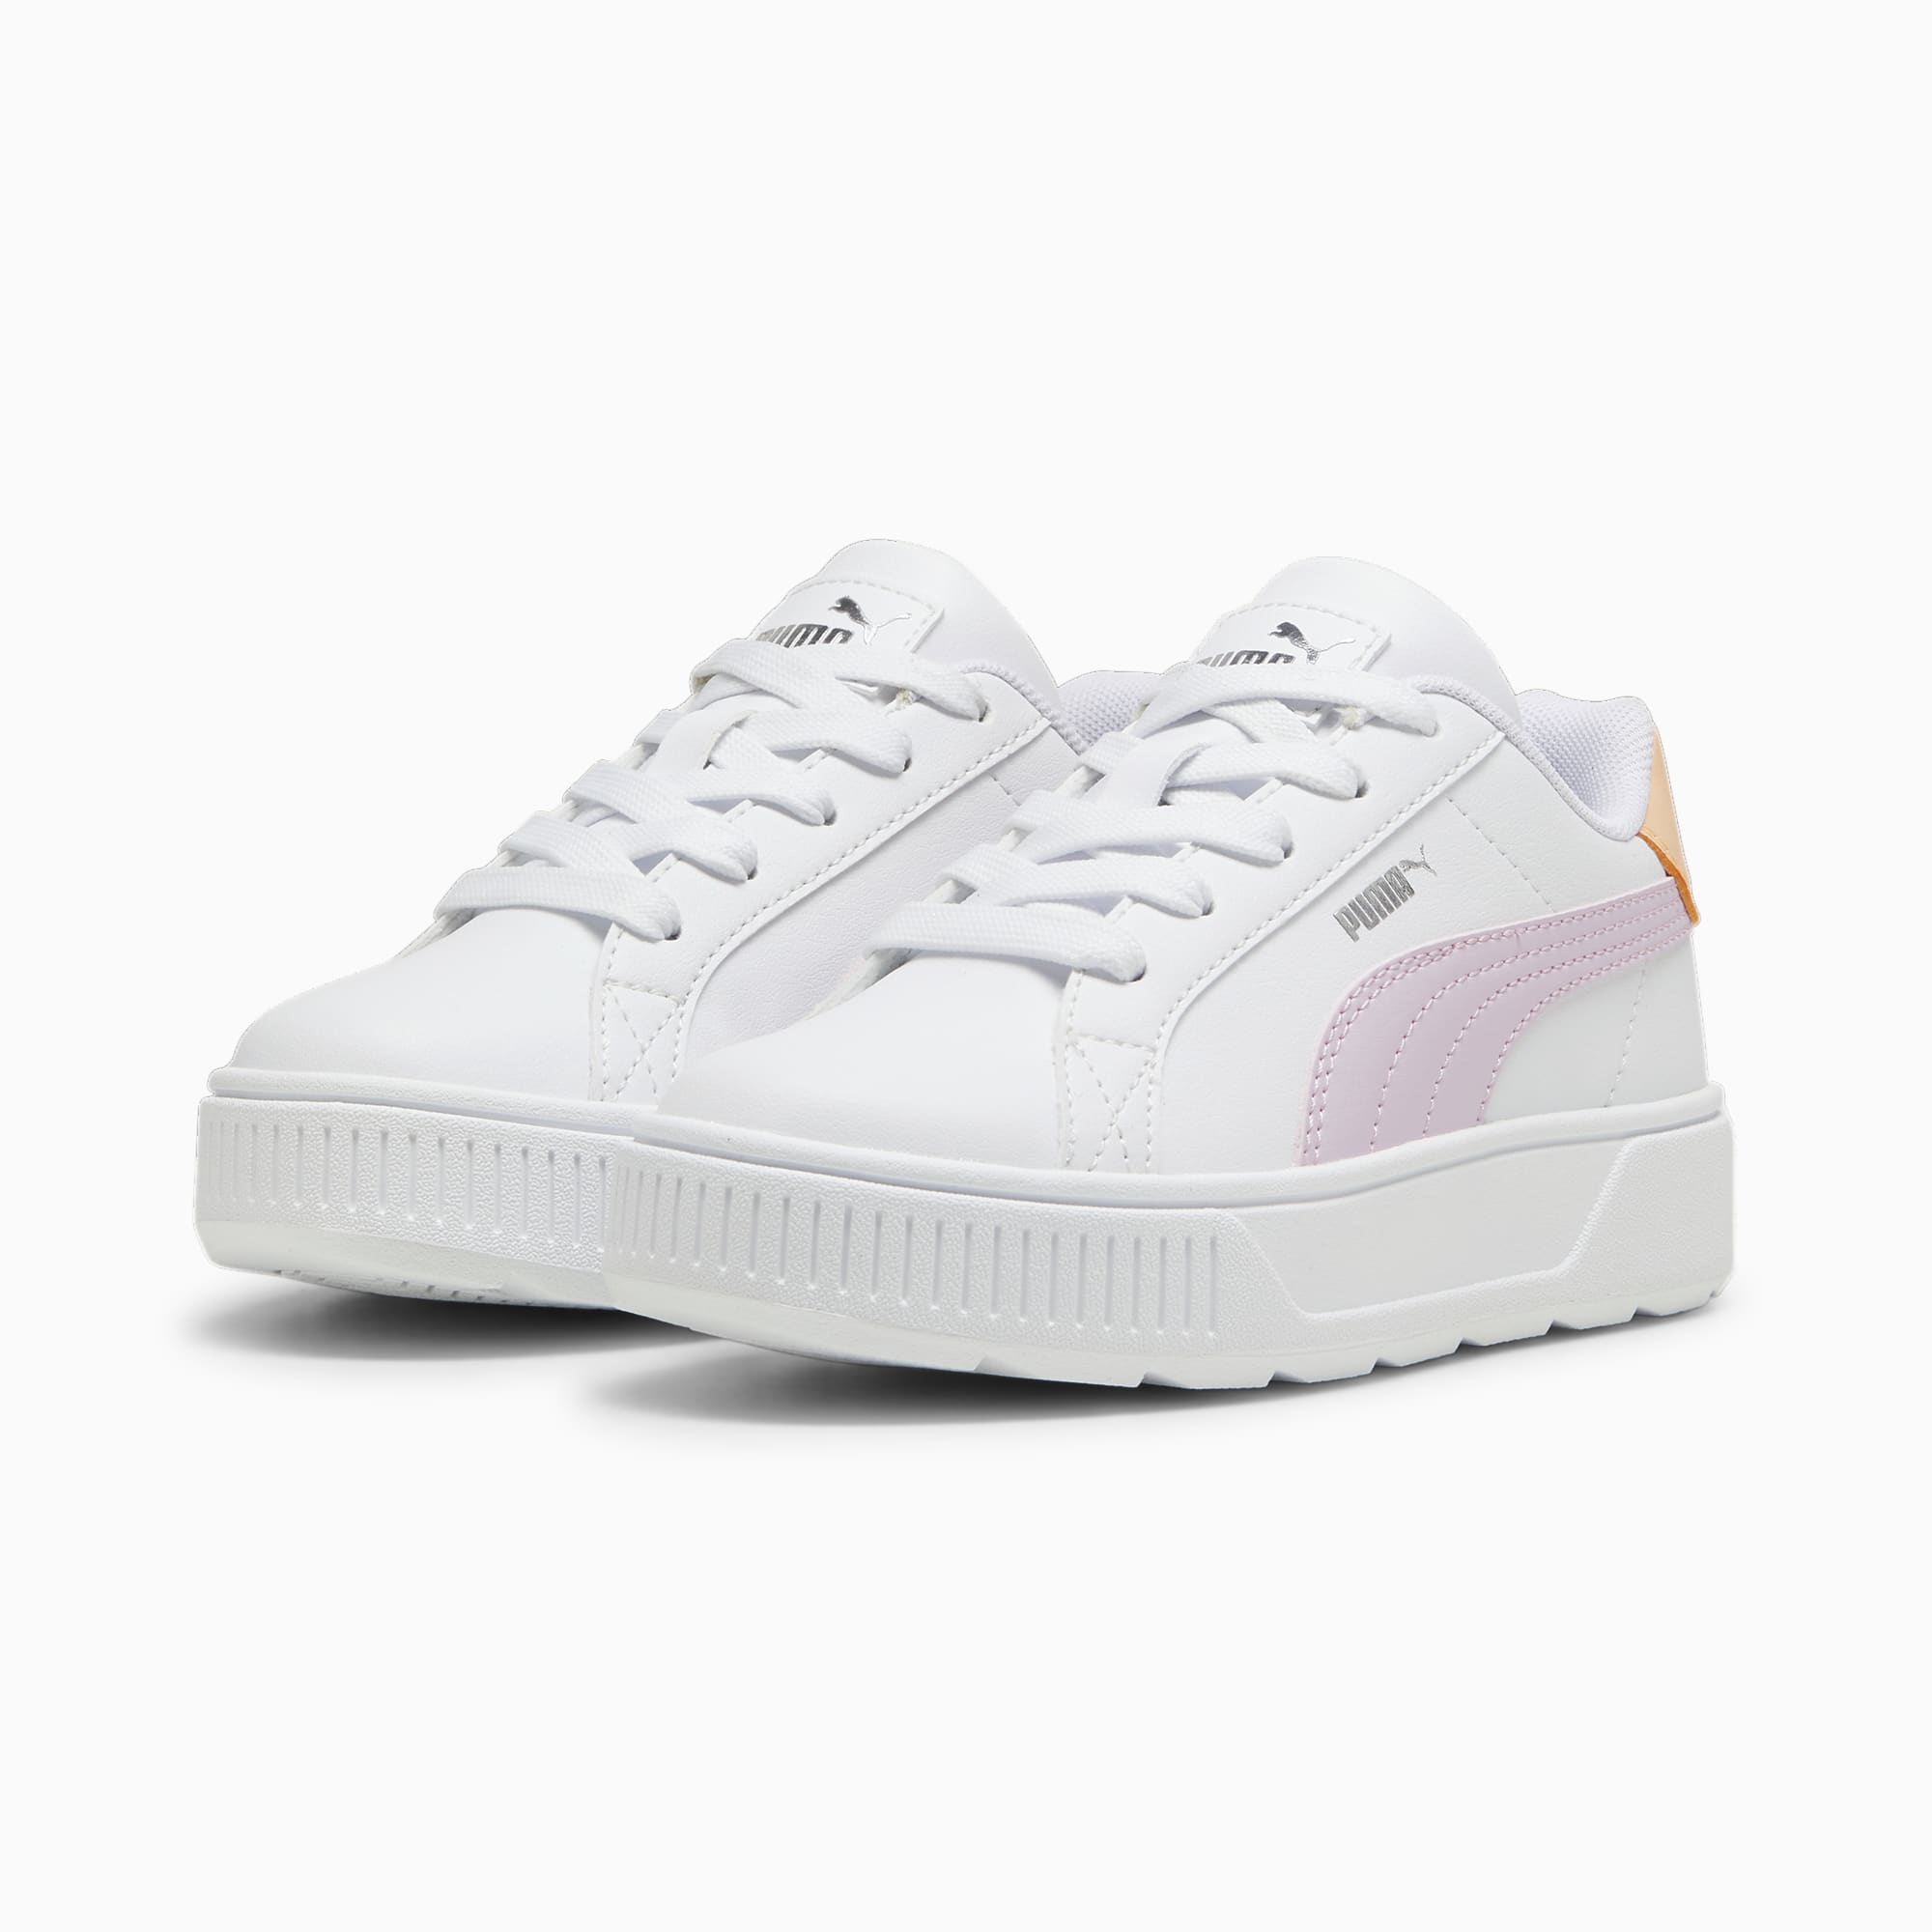 PUMA Karmen L Sneakers Kids, White/Grape Mist/Silver, Size 35, Shoes